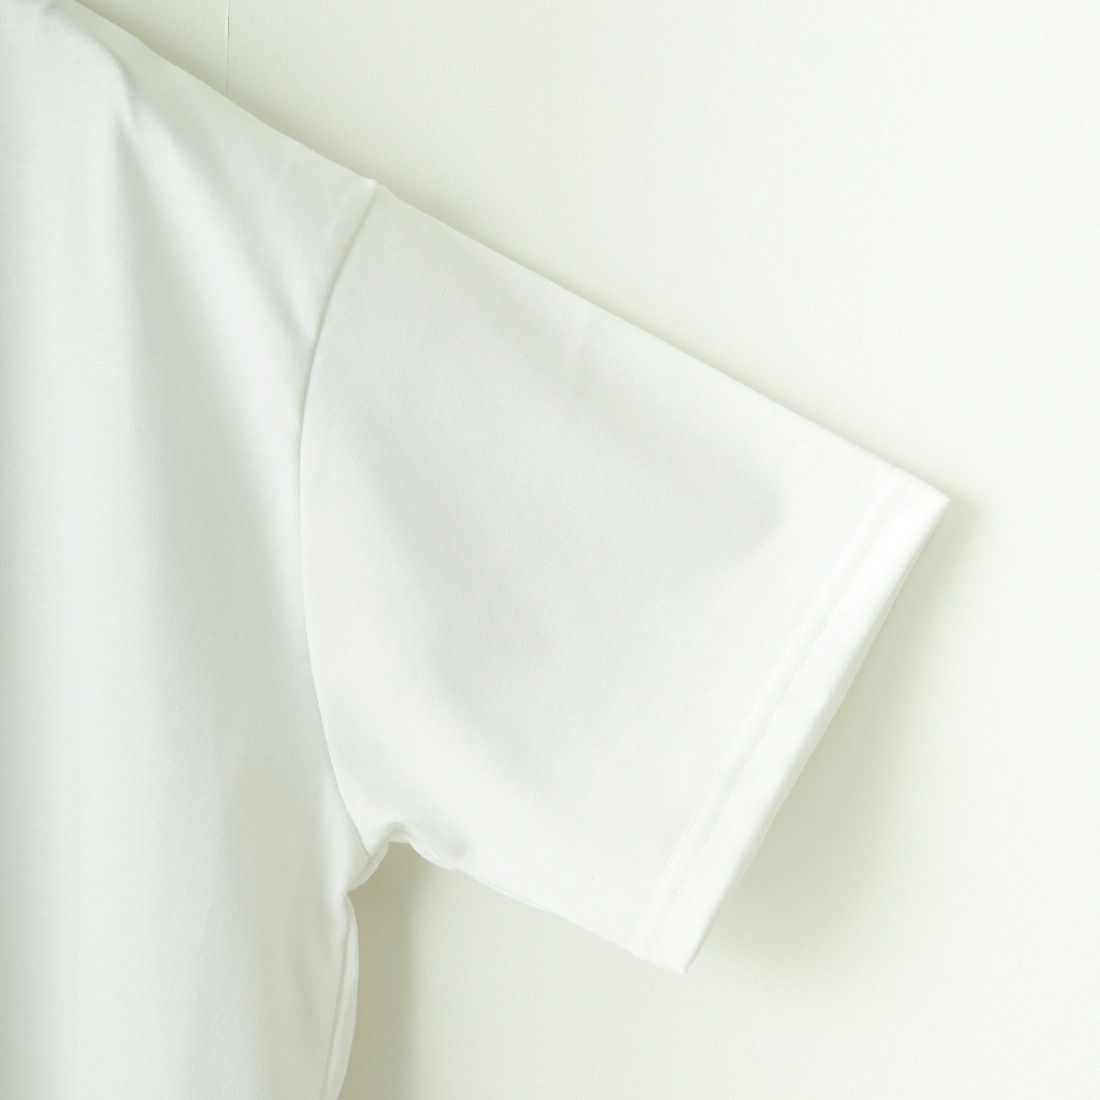 THOUSAND MILE [サウザンド マイル] ショートスリーブTシャツ [TM241TC00240] 01 WHITE